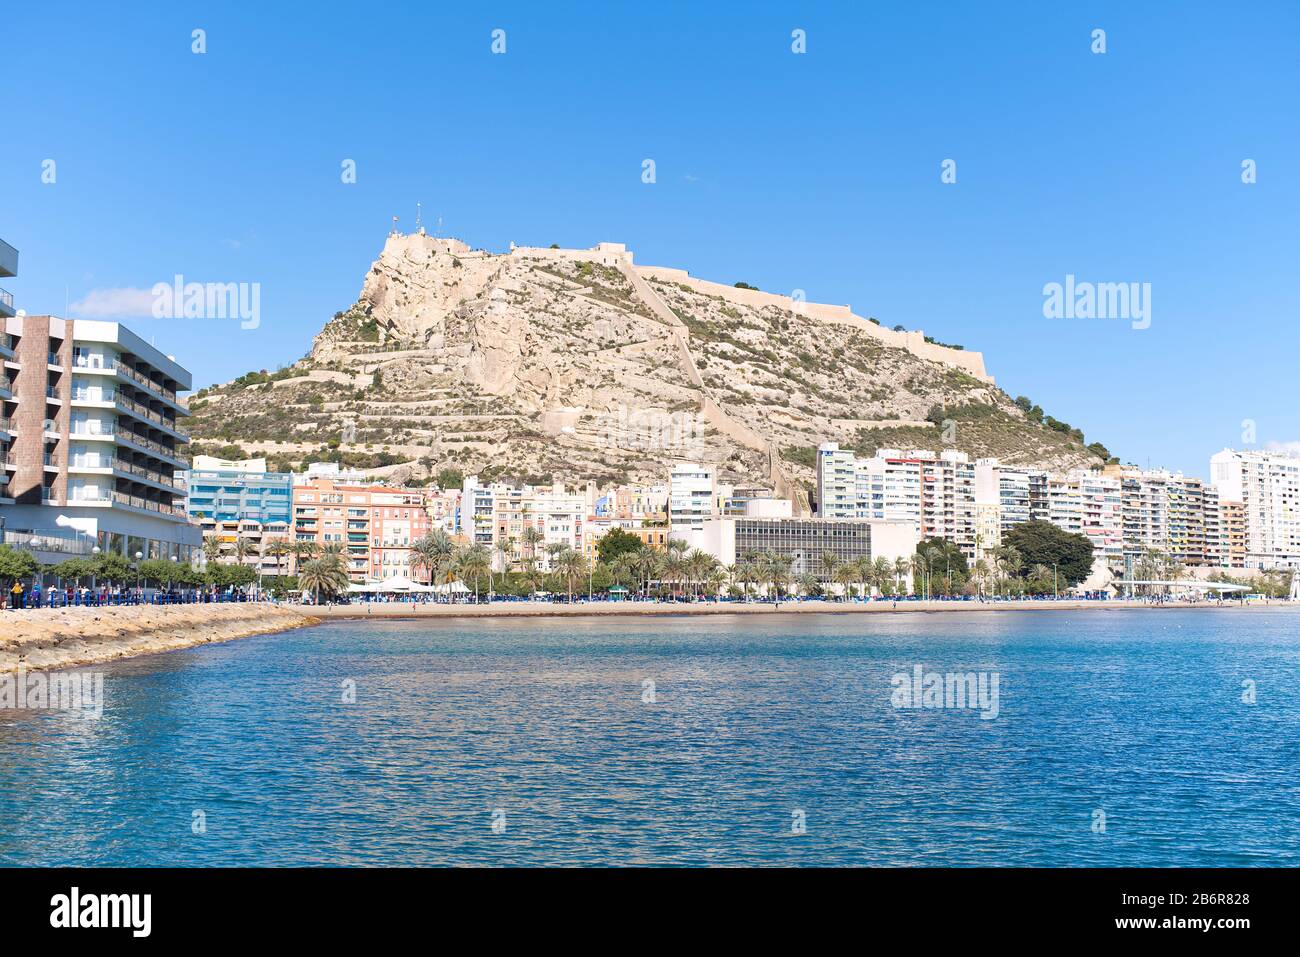 Vista del Castillo de Santa Bárbara situado en el Monte Benacantil desde la playa en la costa de Alicante en el mar Mediterráneo en un día soleado azul brillante. Foto de stock